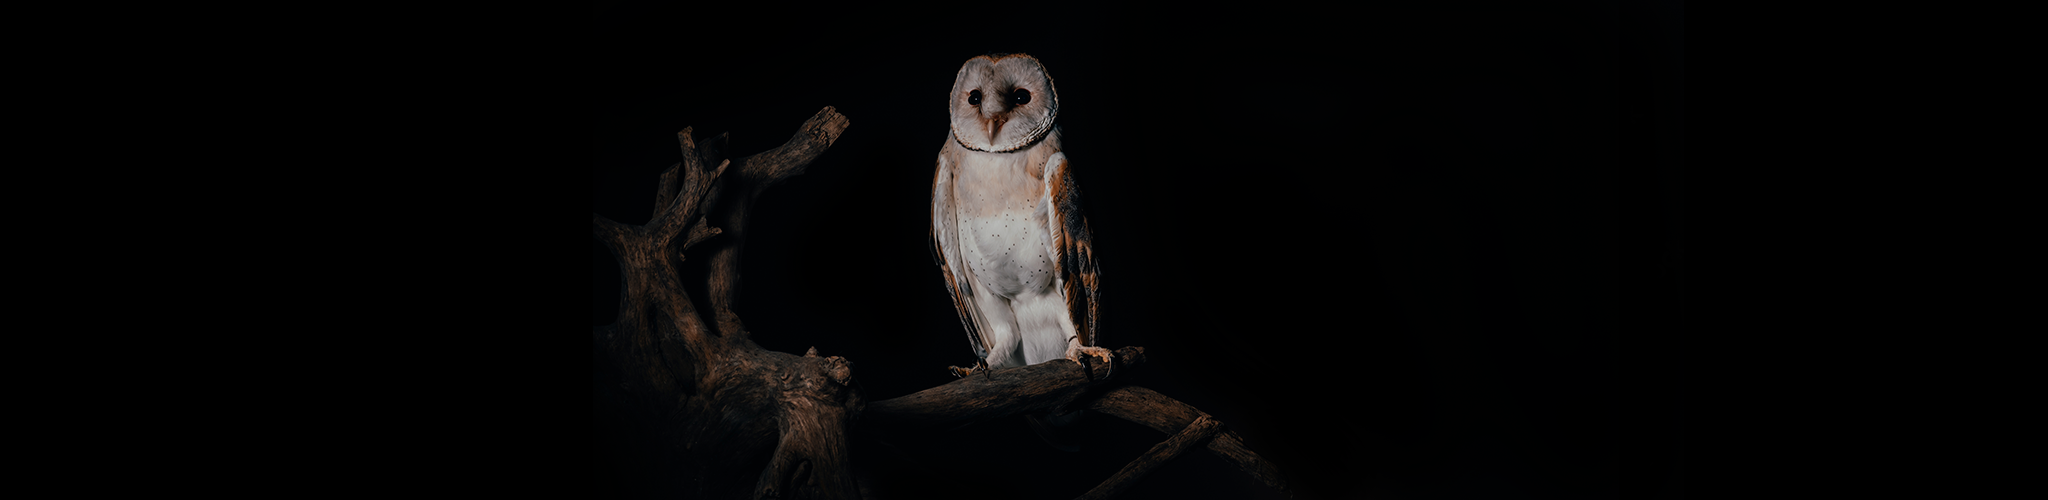 The Owl at Dusk